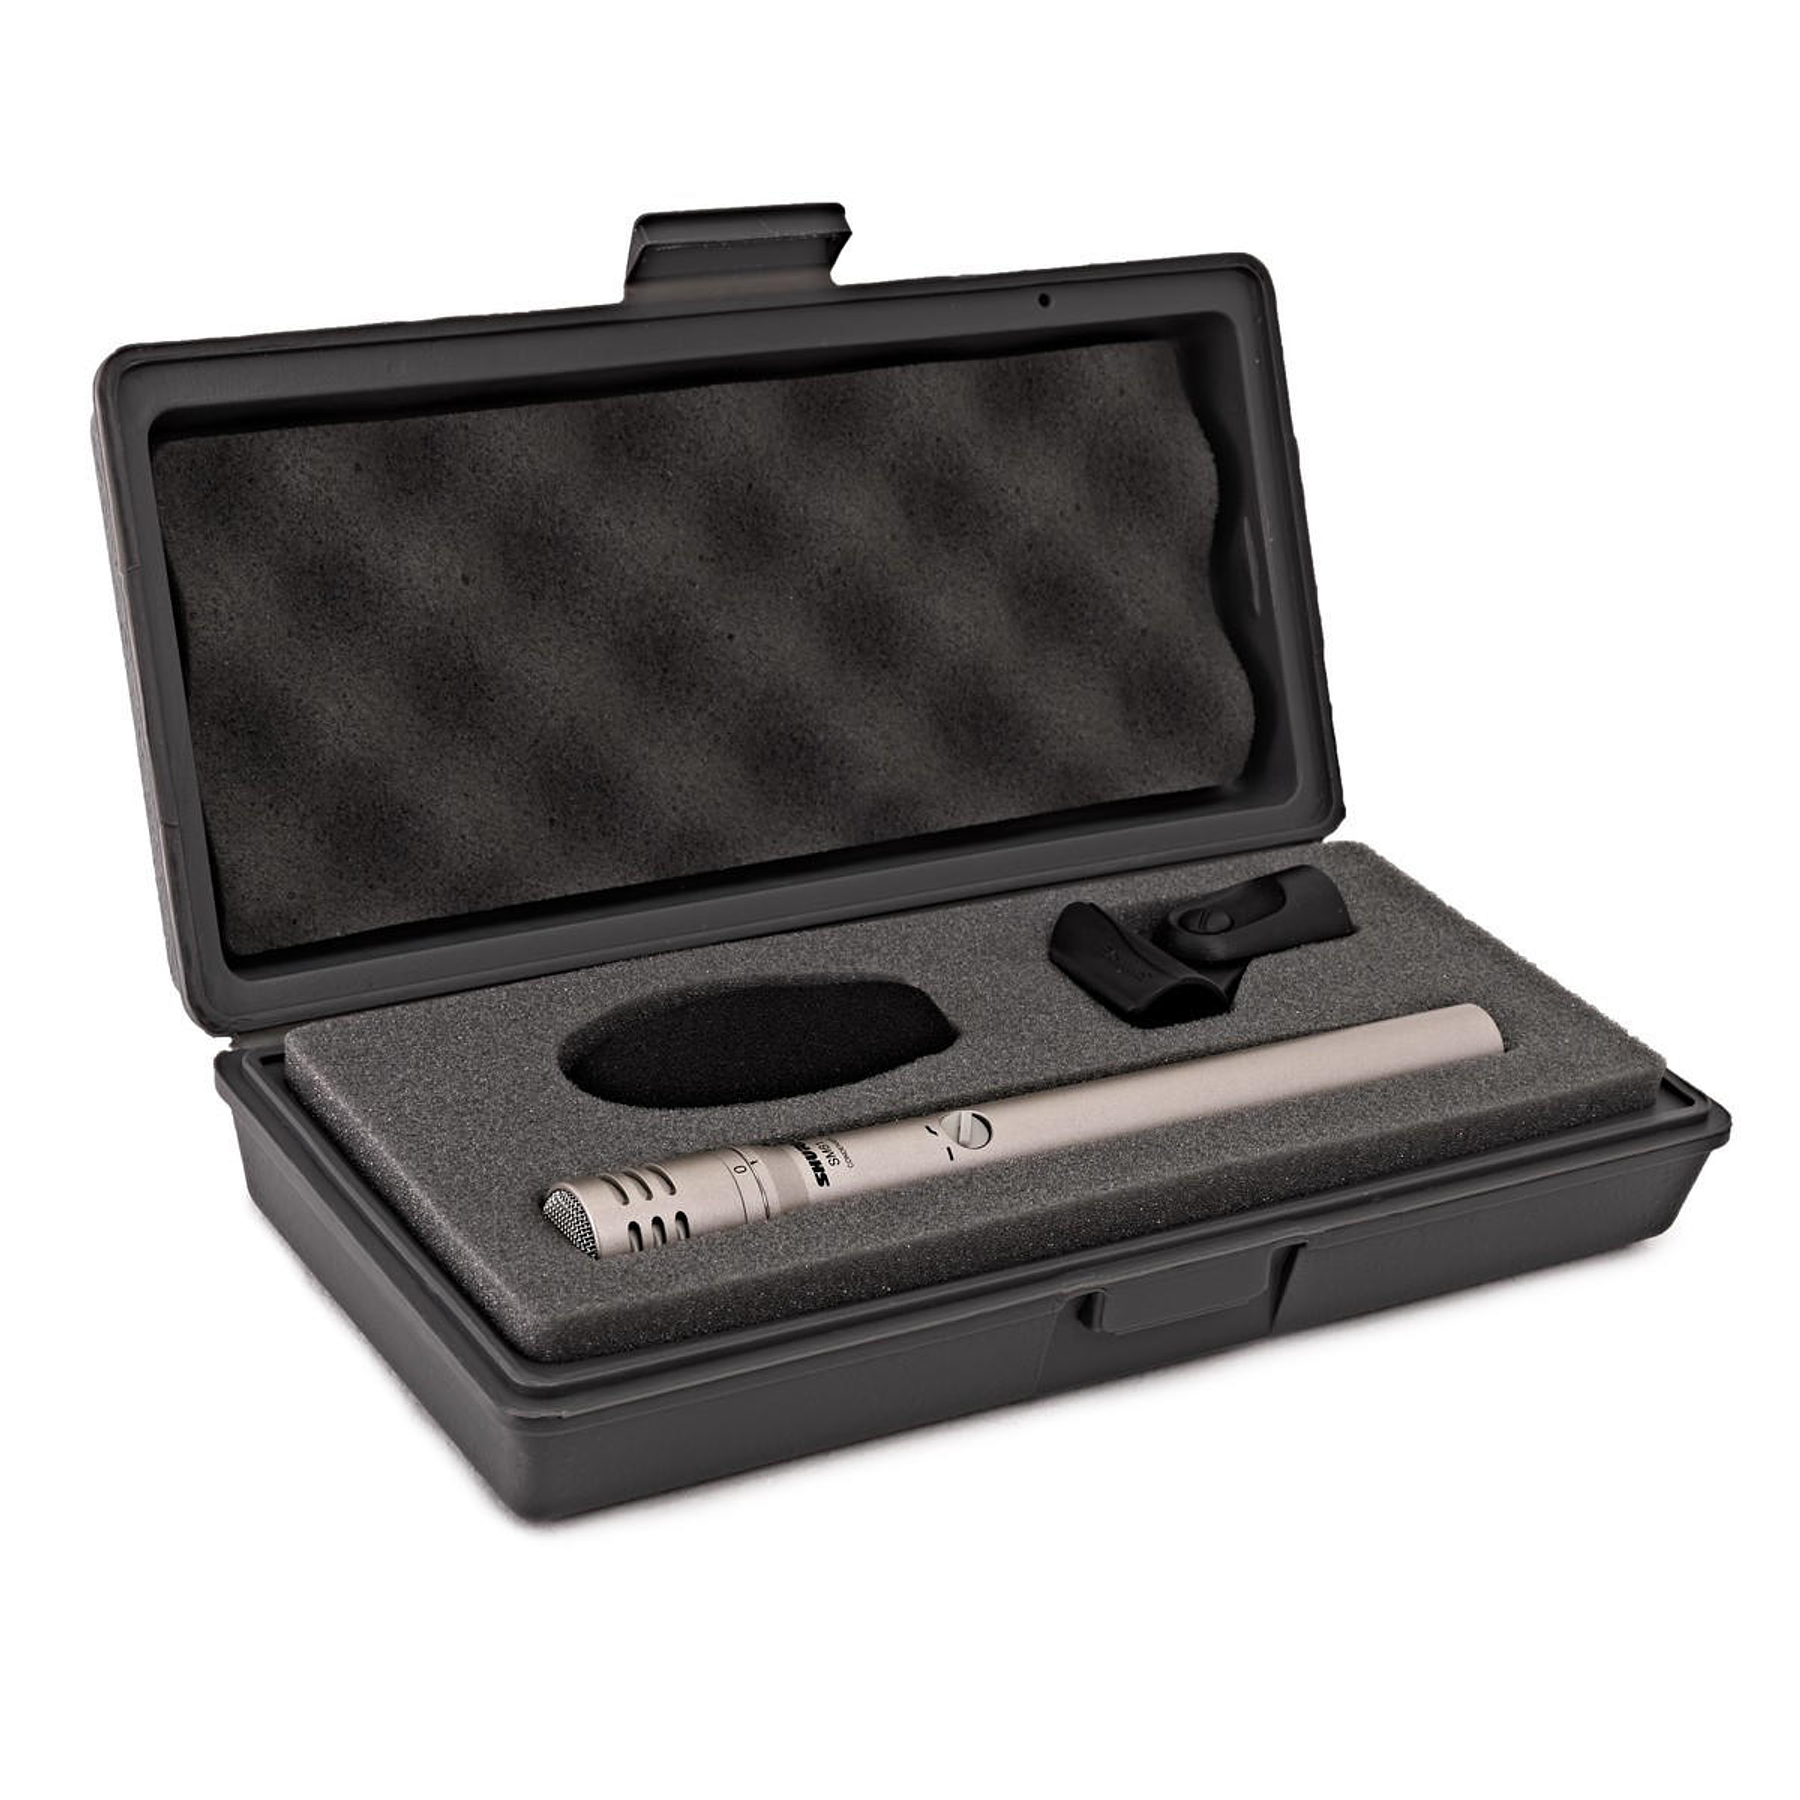 Microfono condensador para instrumentos Shure SM81-LC